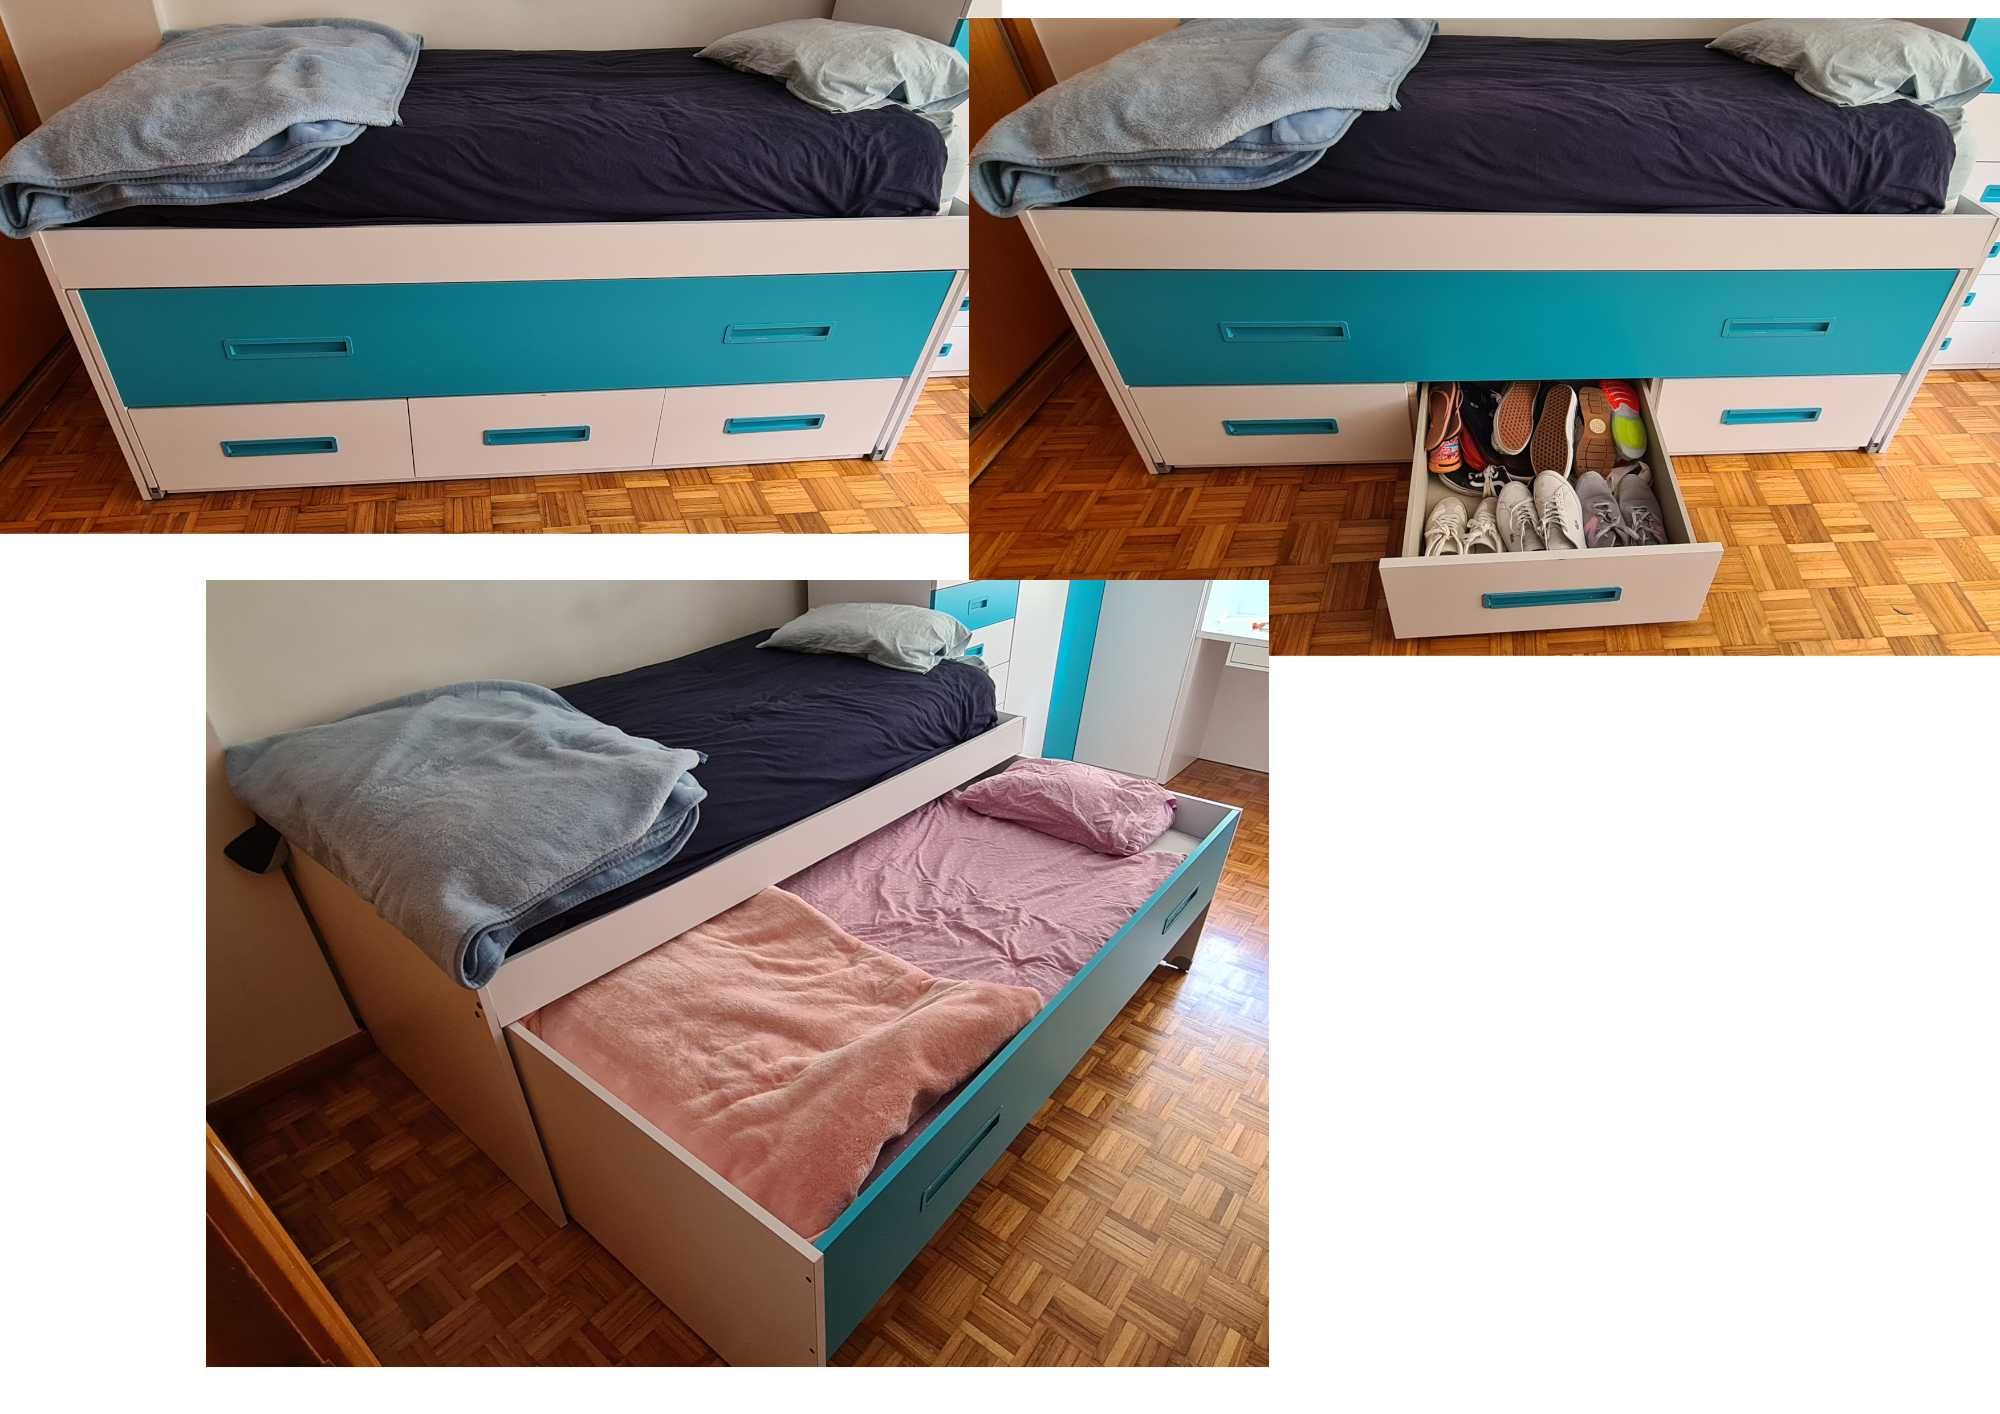 Mobília de quarto juvenil (cama, roupeiros, estantes, secretária)